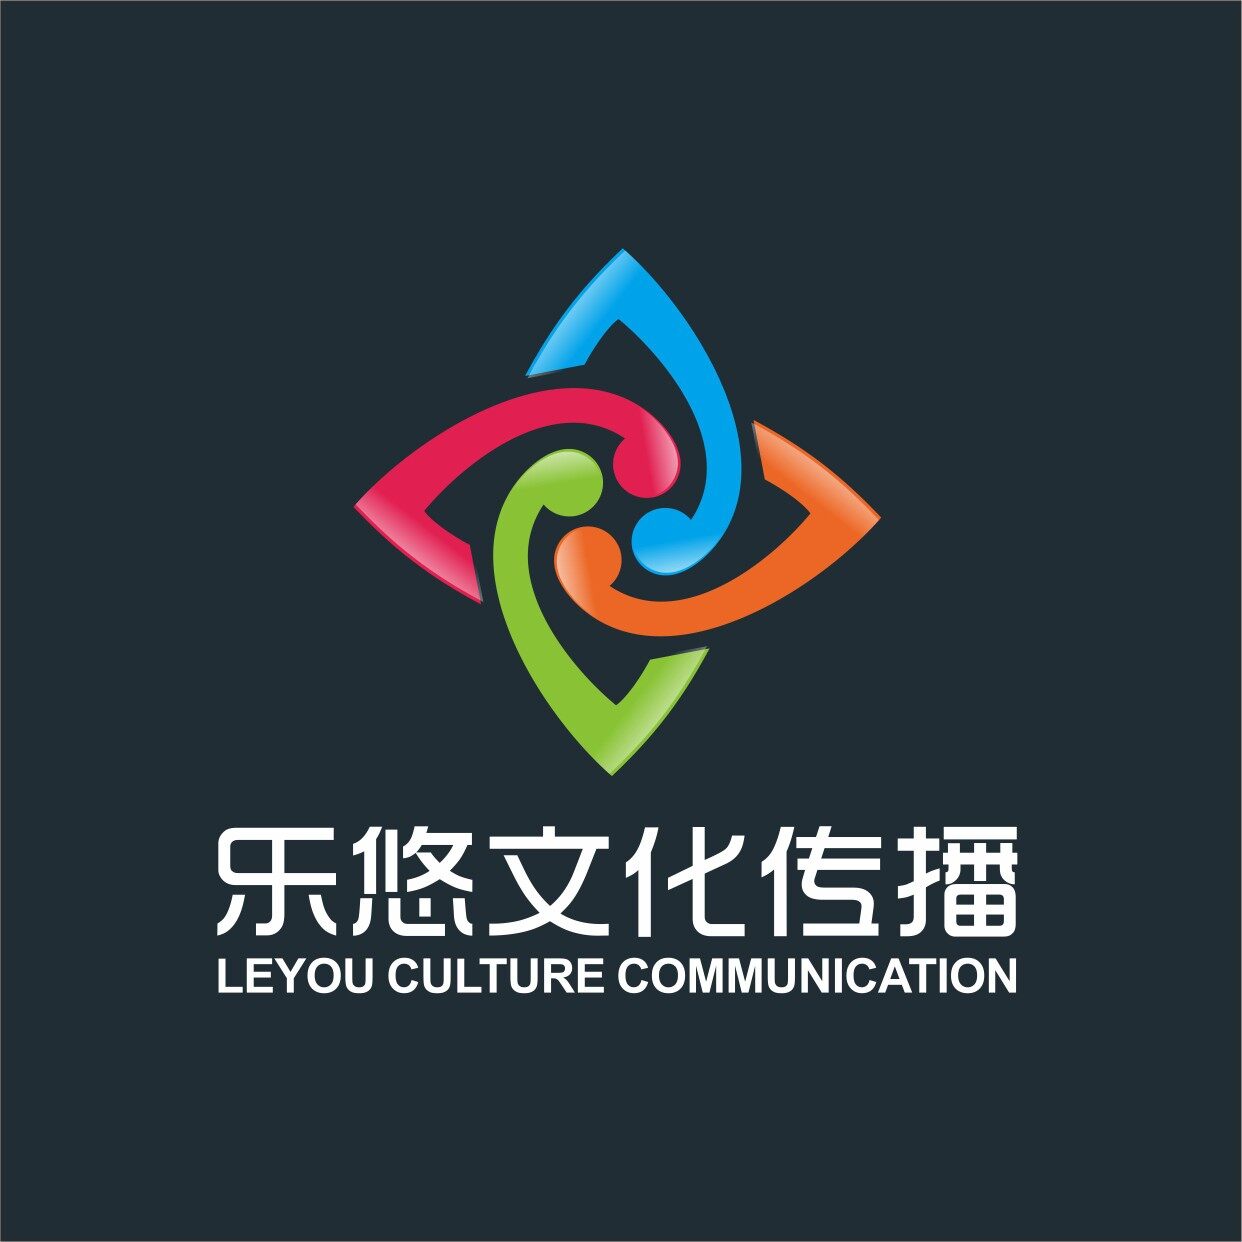 东莞市乐悠文化传播有限公司logo